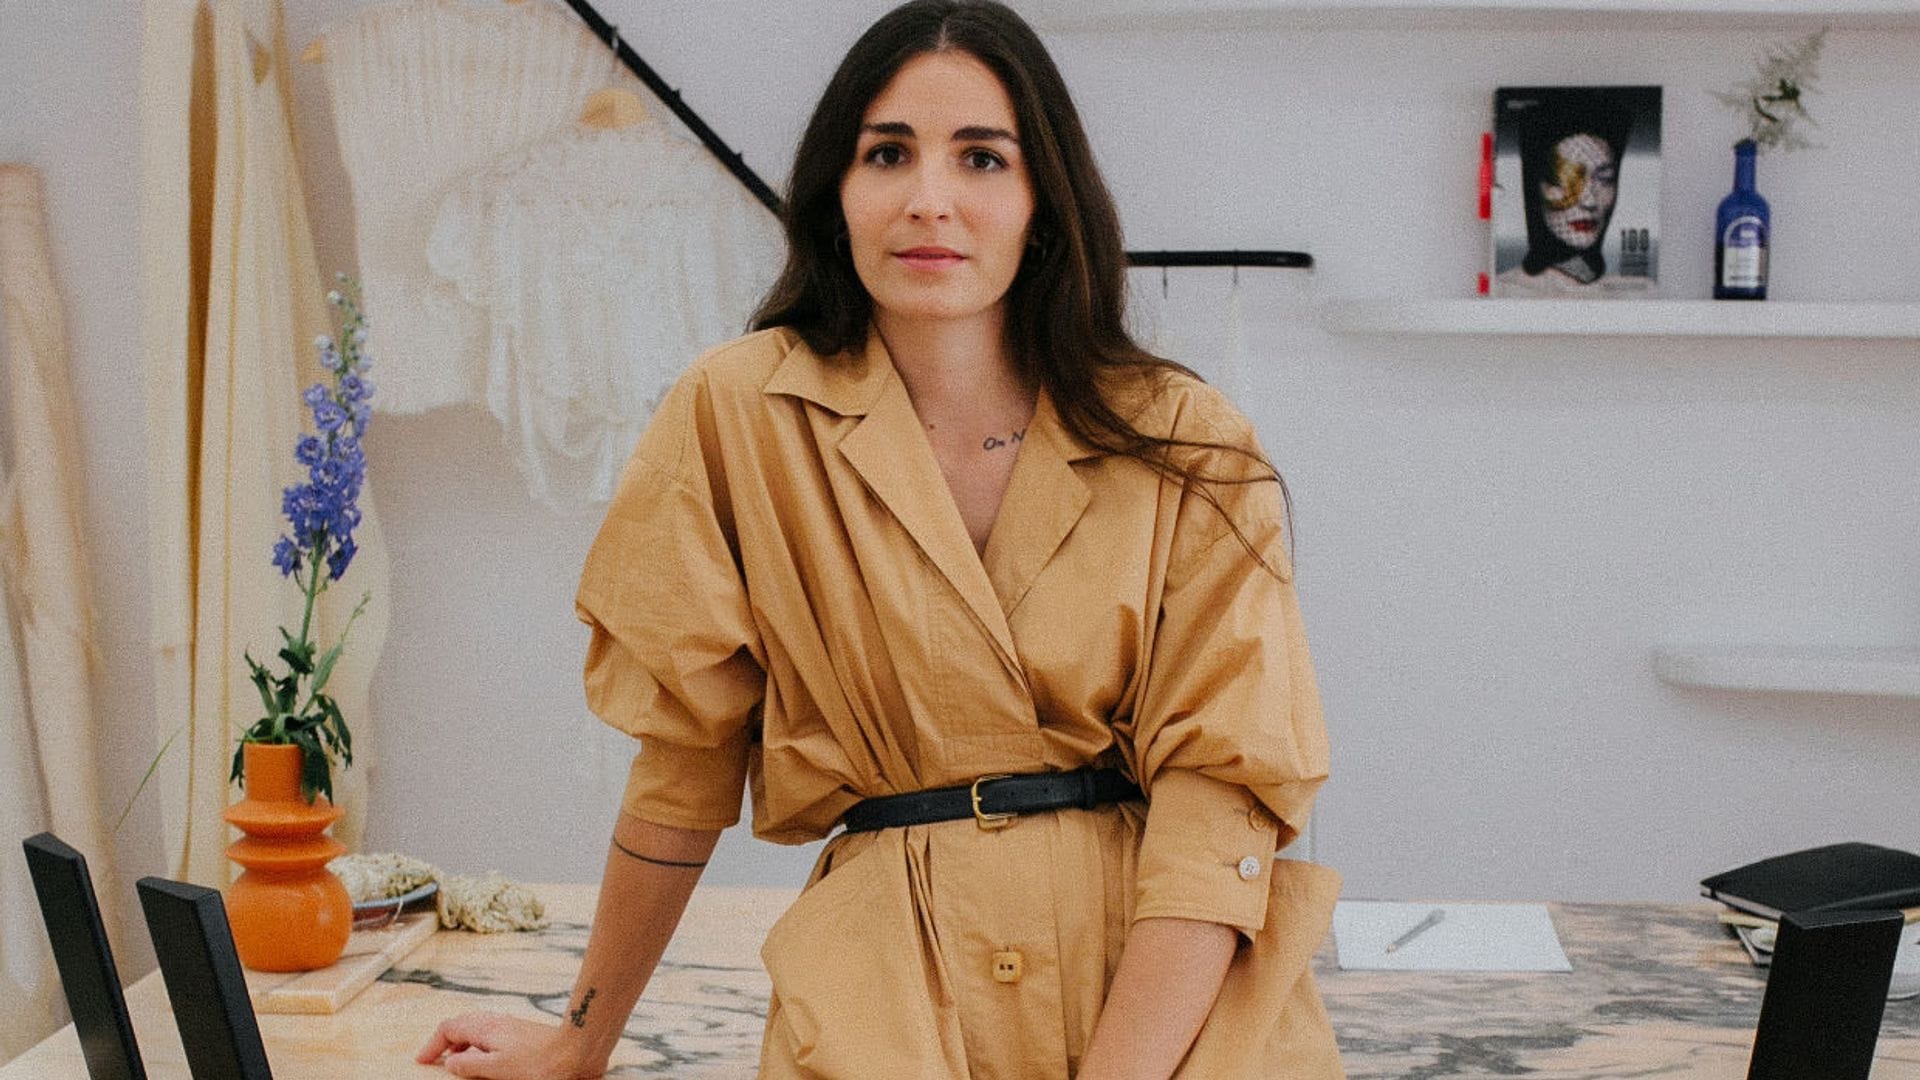 Hablamos con Inés Lacasa, la diseñadora de los vestidos de novia sostenibles que enamora a madrileñas y murcianas